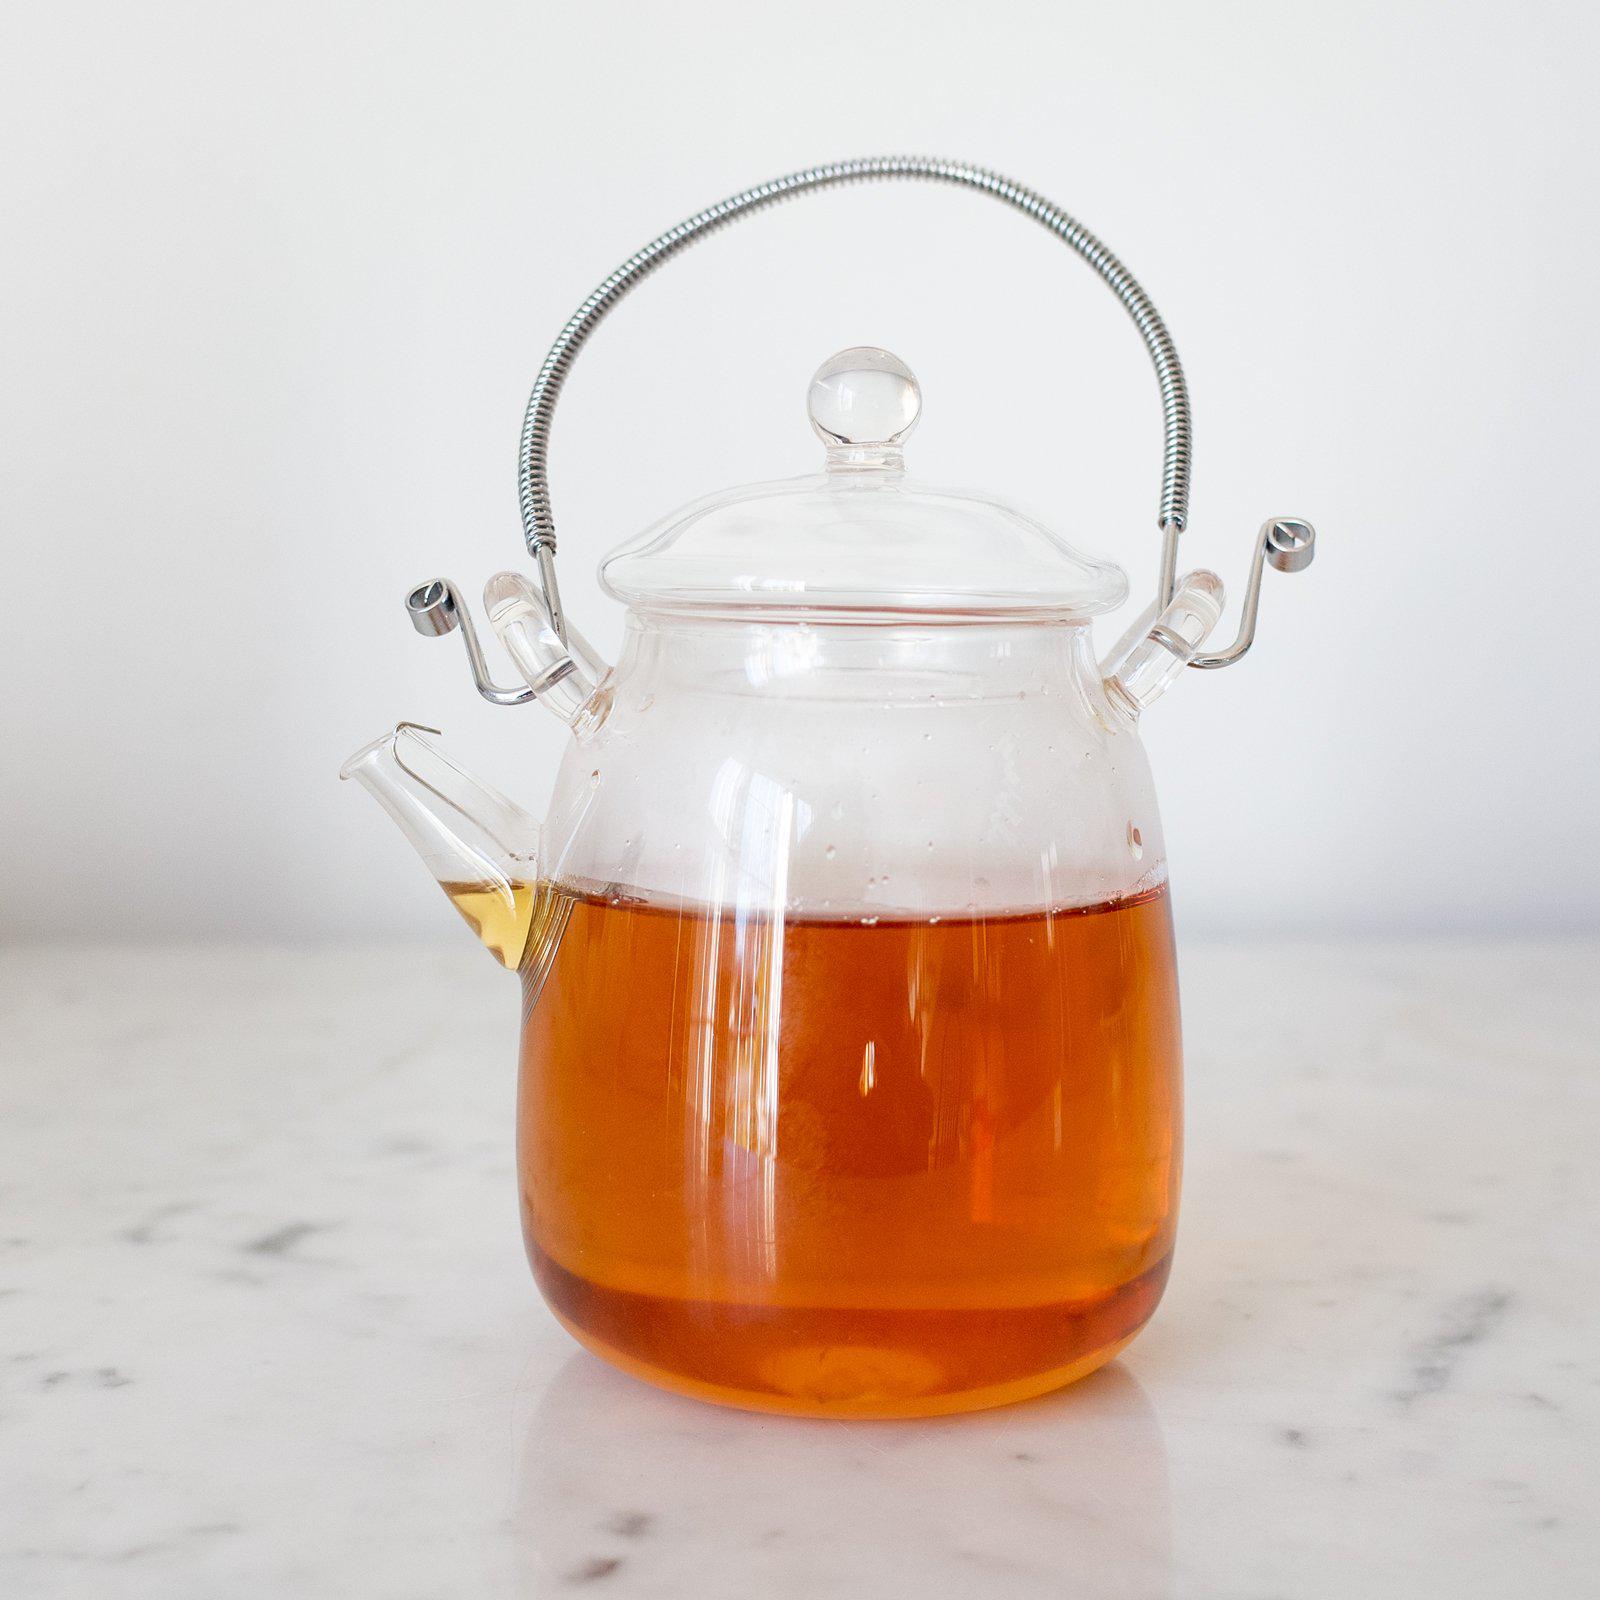 Mini Tea Pot Tea Infuser